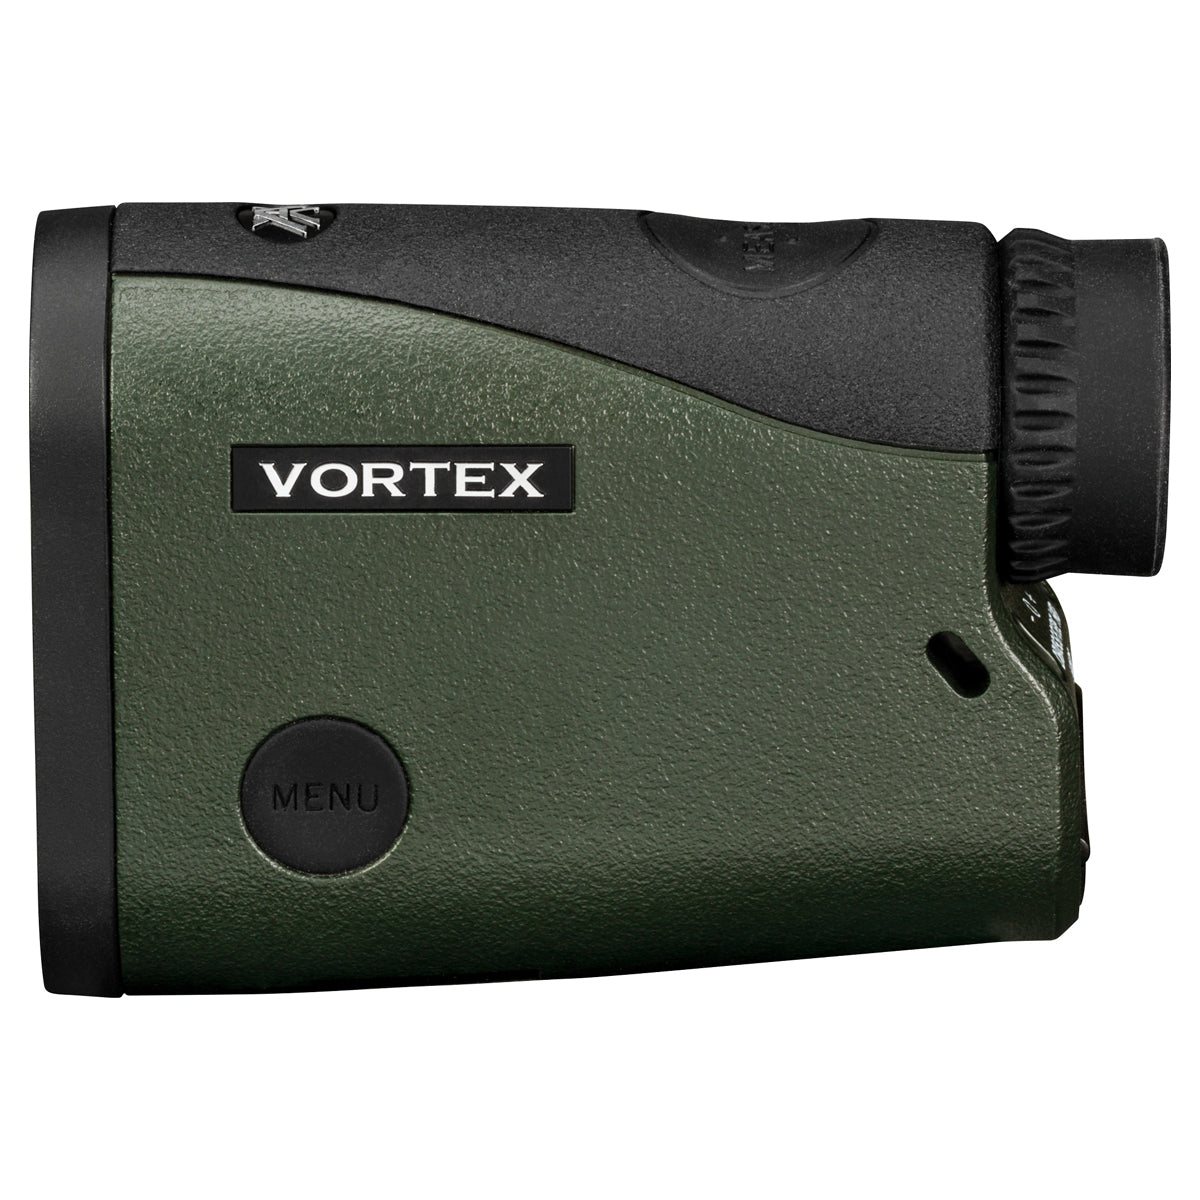 Vortex Crossfire II HD 1400 Laser Rangefinder